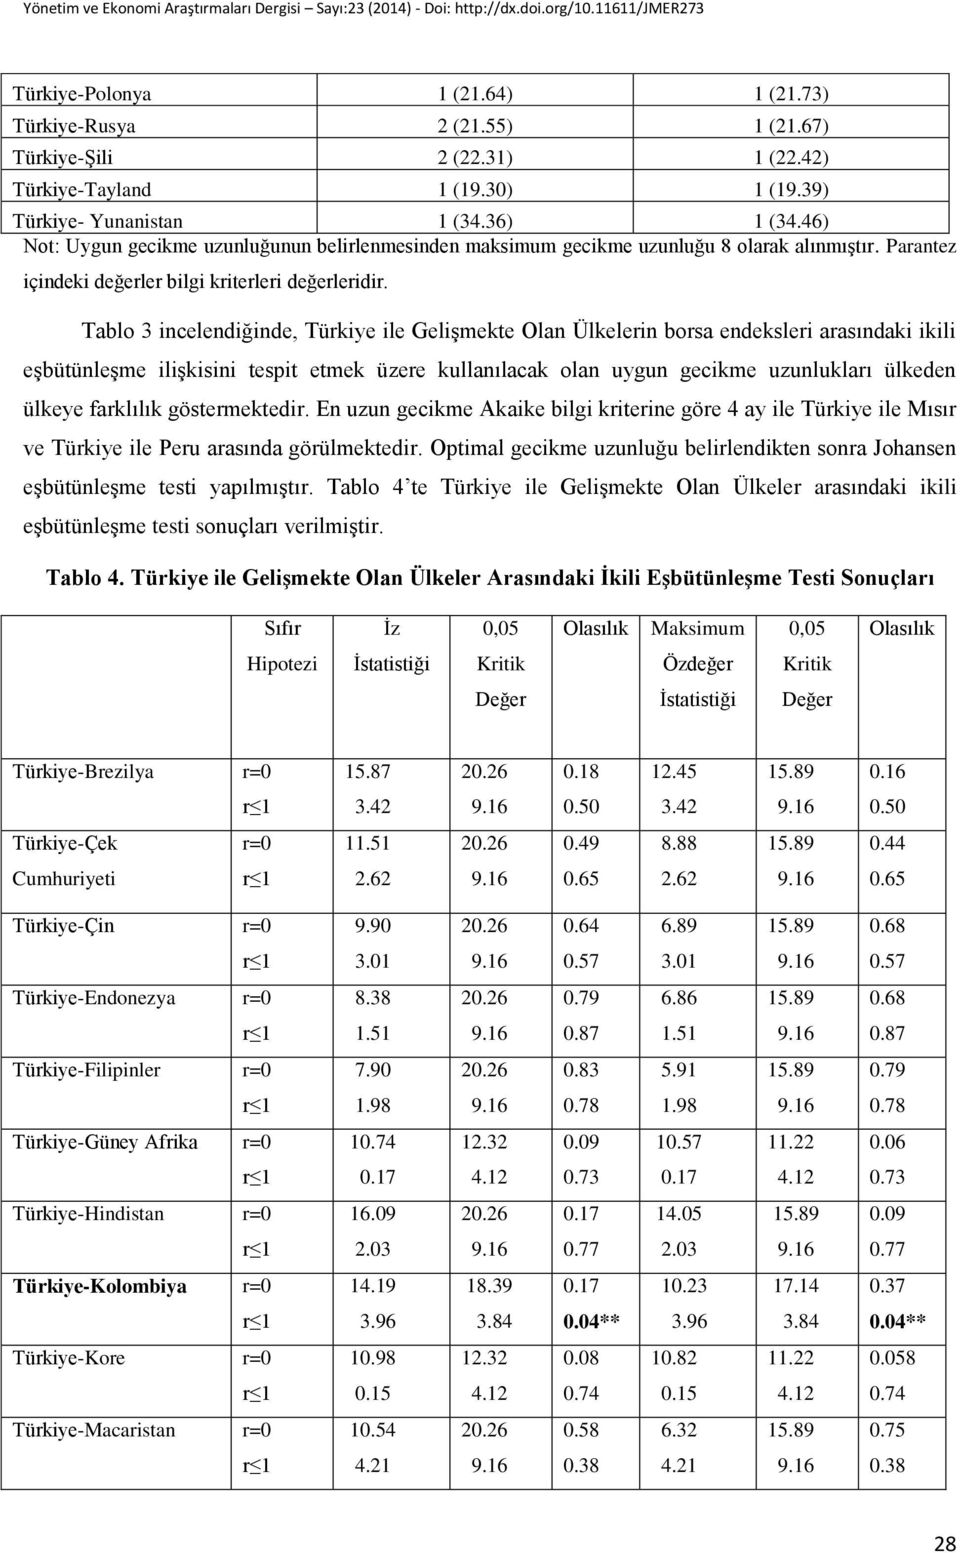 Tablo 3 incelendiğinde, Türkiye ile Gelişmekte Olan Ülkelerin borsa endeksleri arasındaki ikili eşbütünleşme ilişkisini tespit etmek üzere kullanılacak olan uygun gecikme uzunlukları ülkeden ülkeye